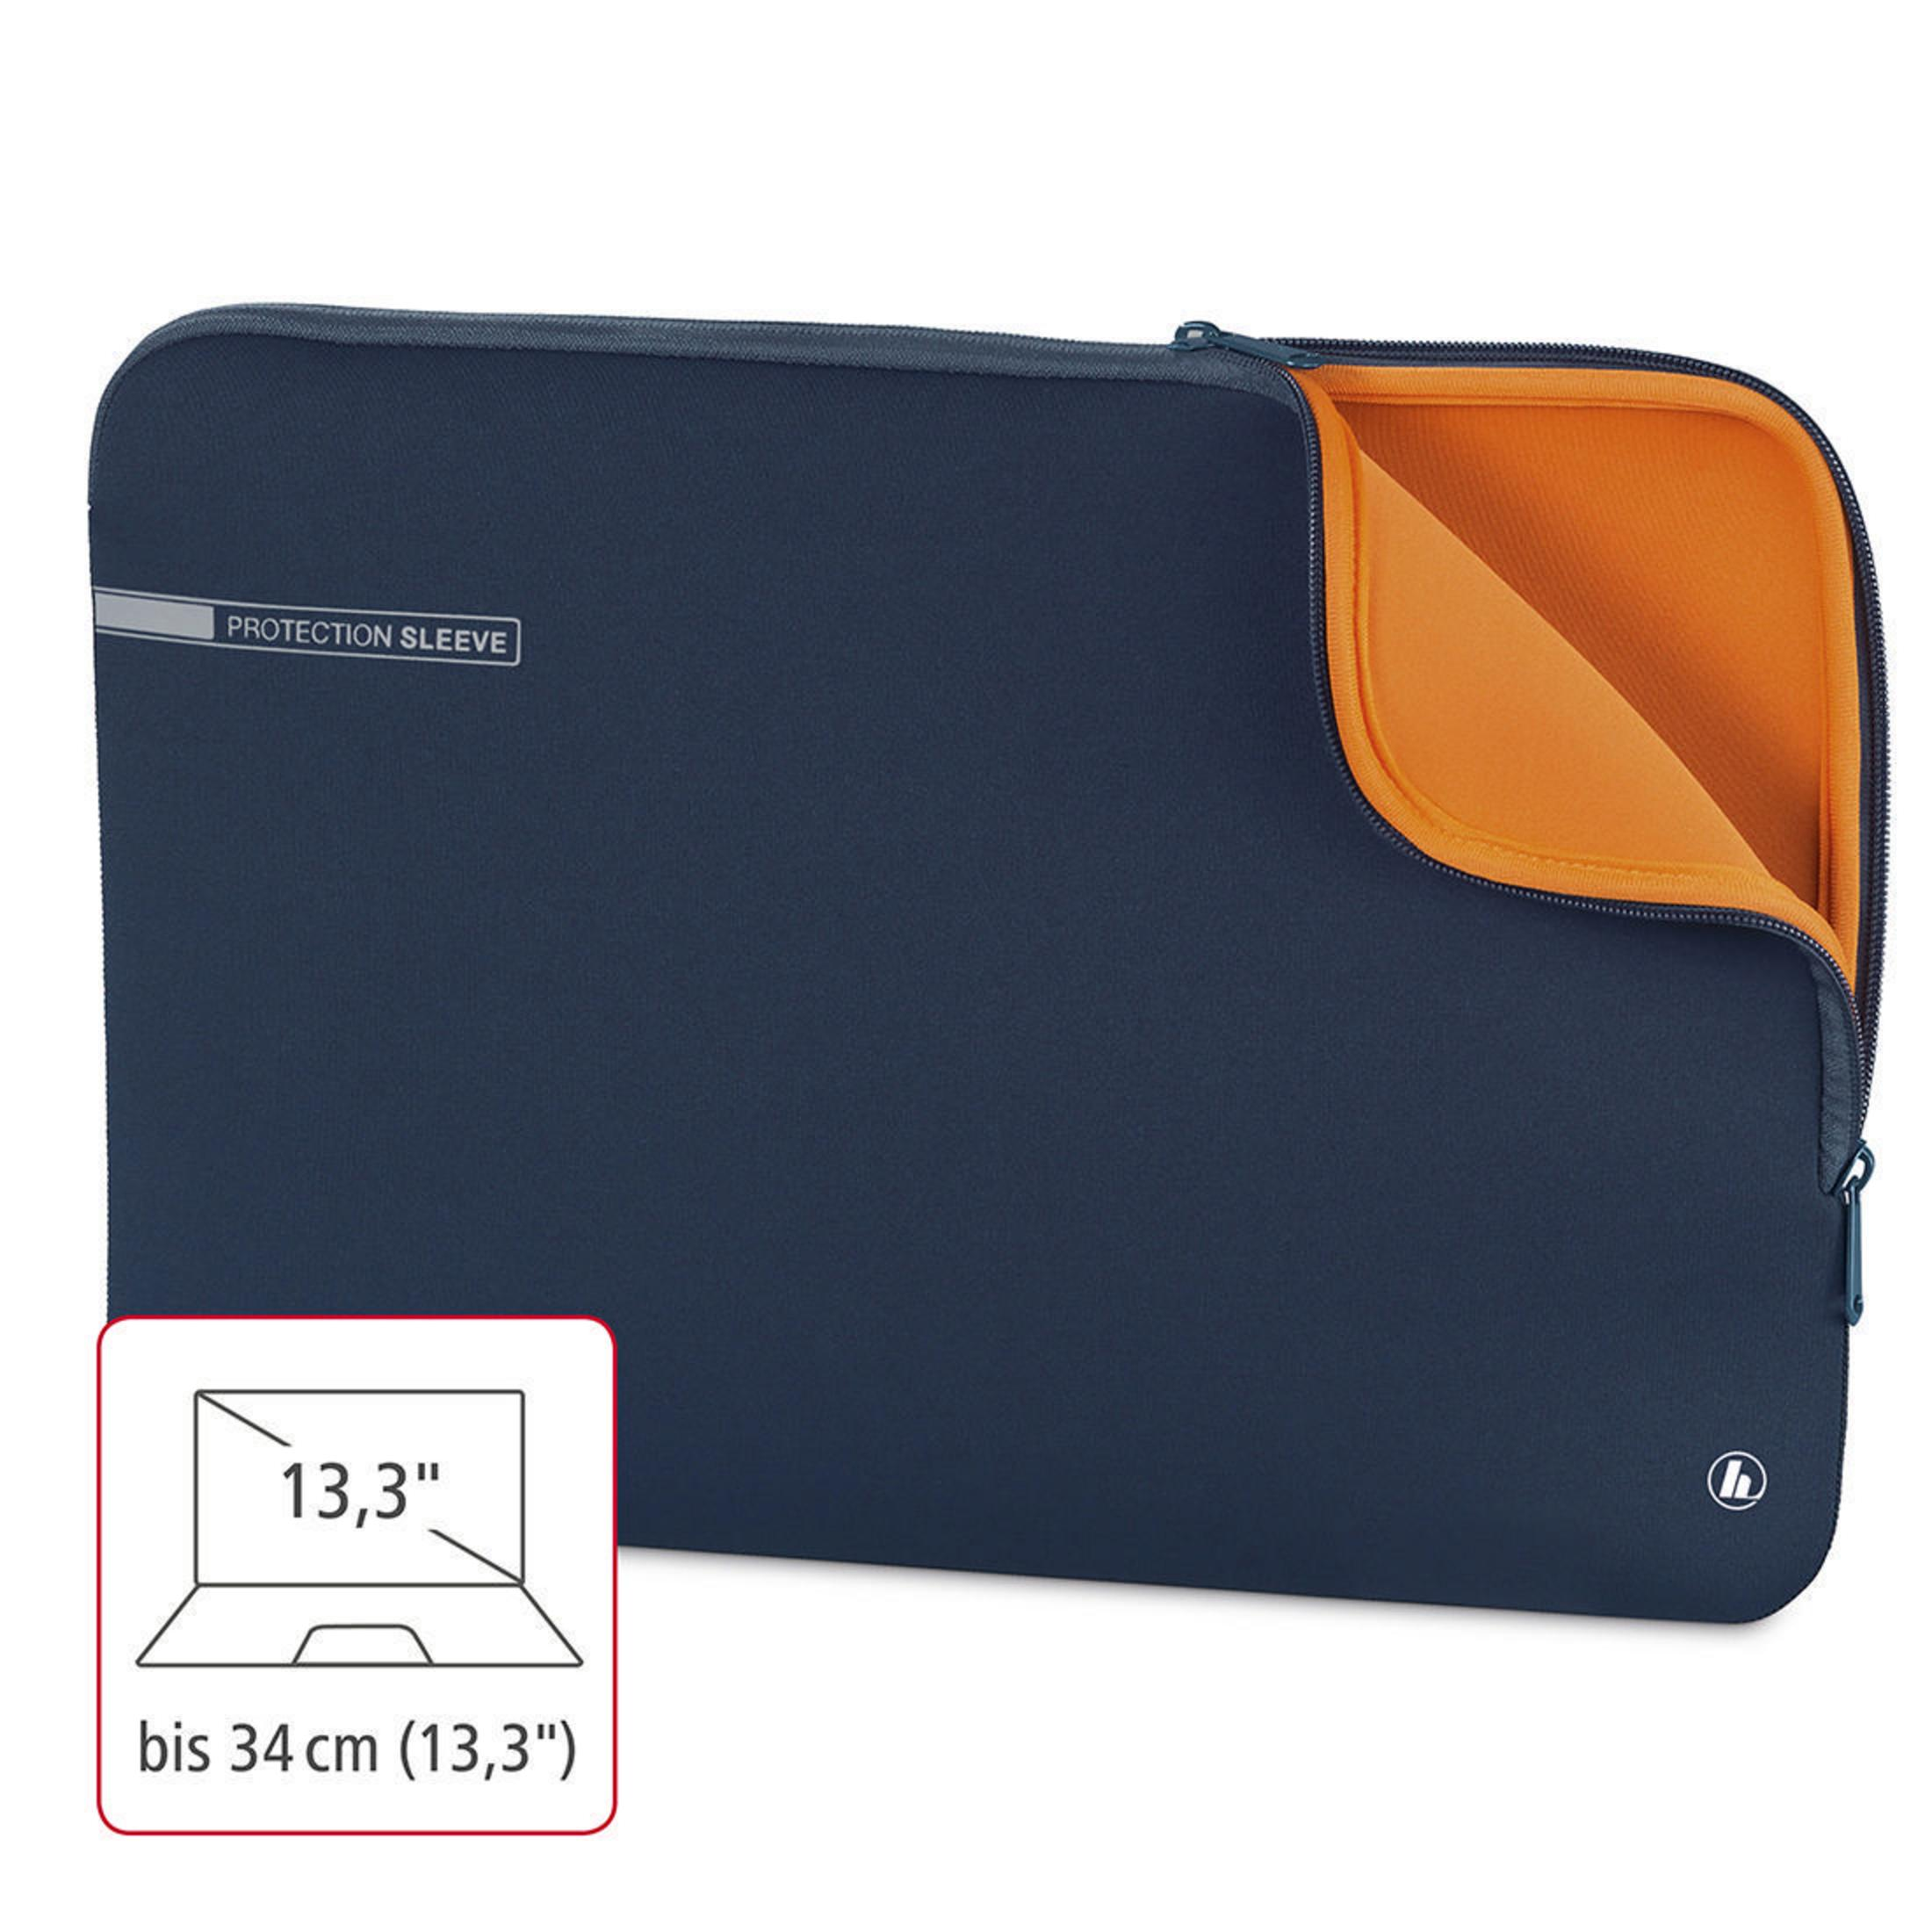 HAMA 101553 NB-SLE Universal Sleeve 13.3 Notebooktasche BL Blau/Orange für Neopren, NEO